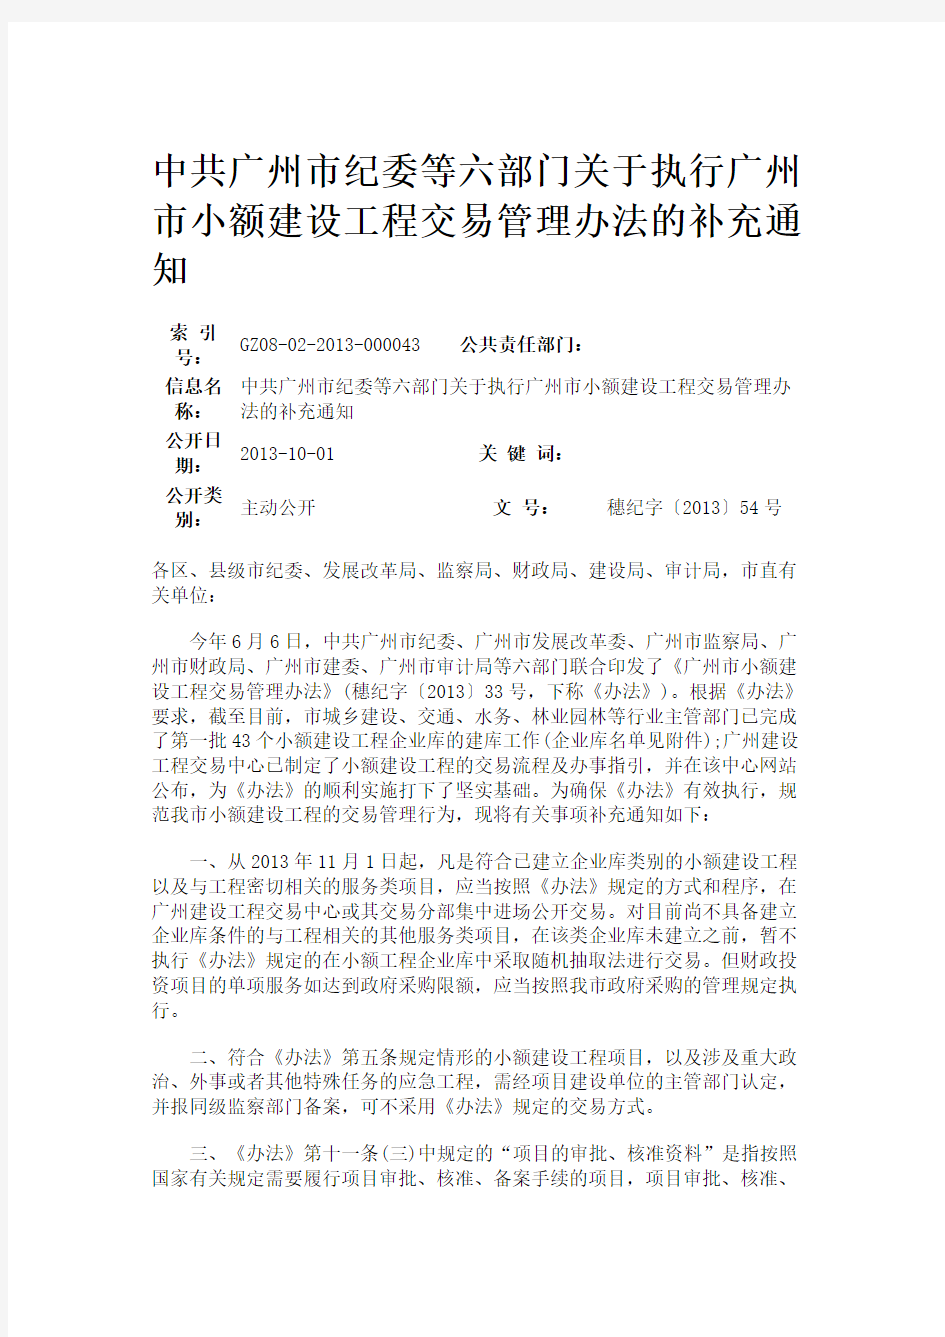 中共广州市纪委等六部门关于执行广州市小额建设工程交易管理办法的补充通知